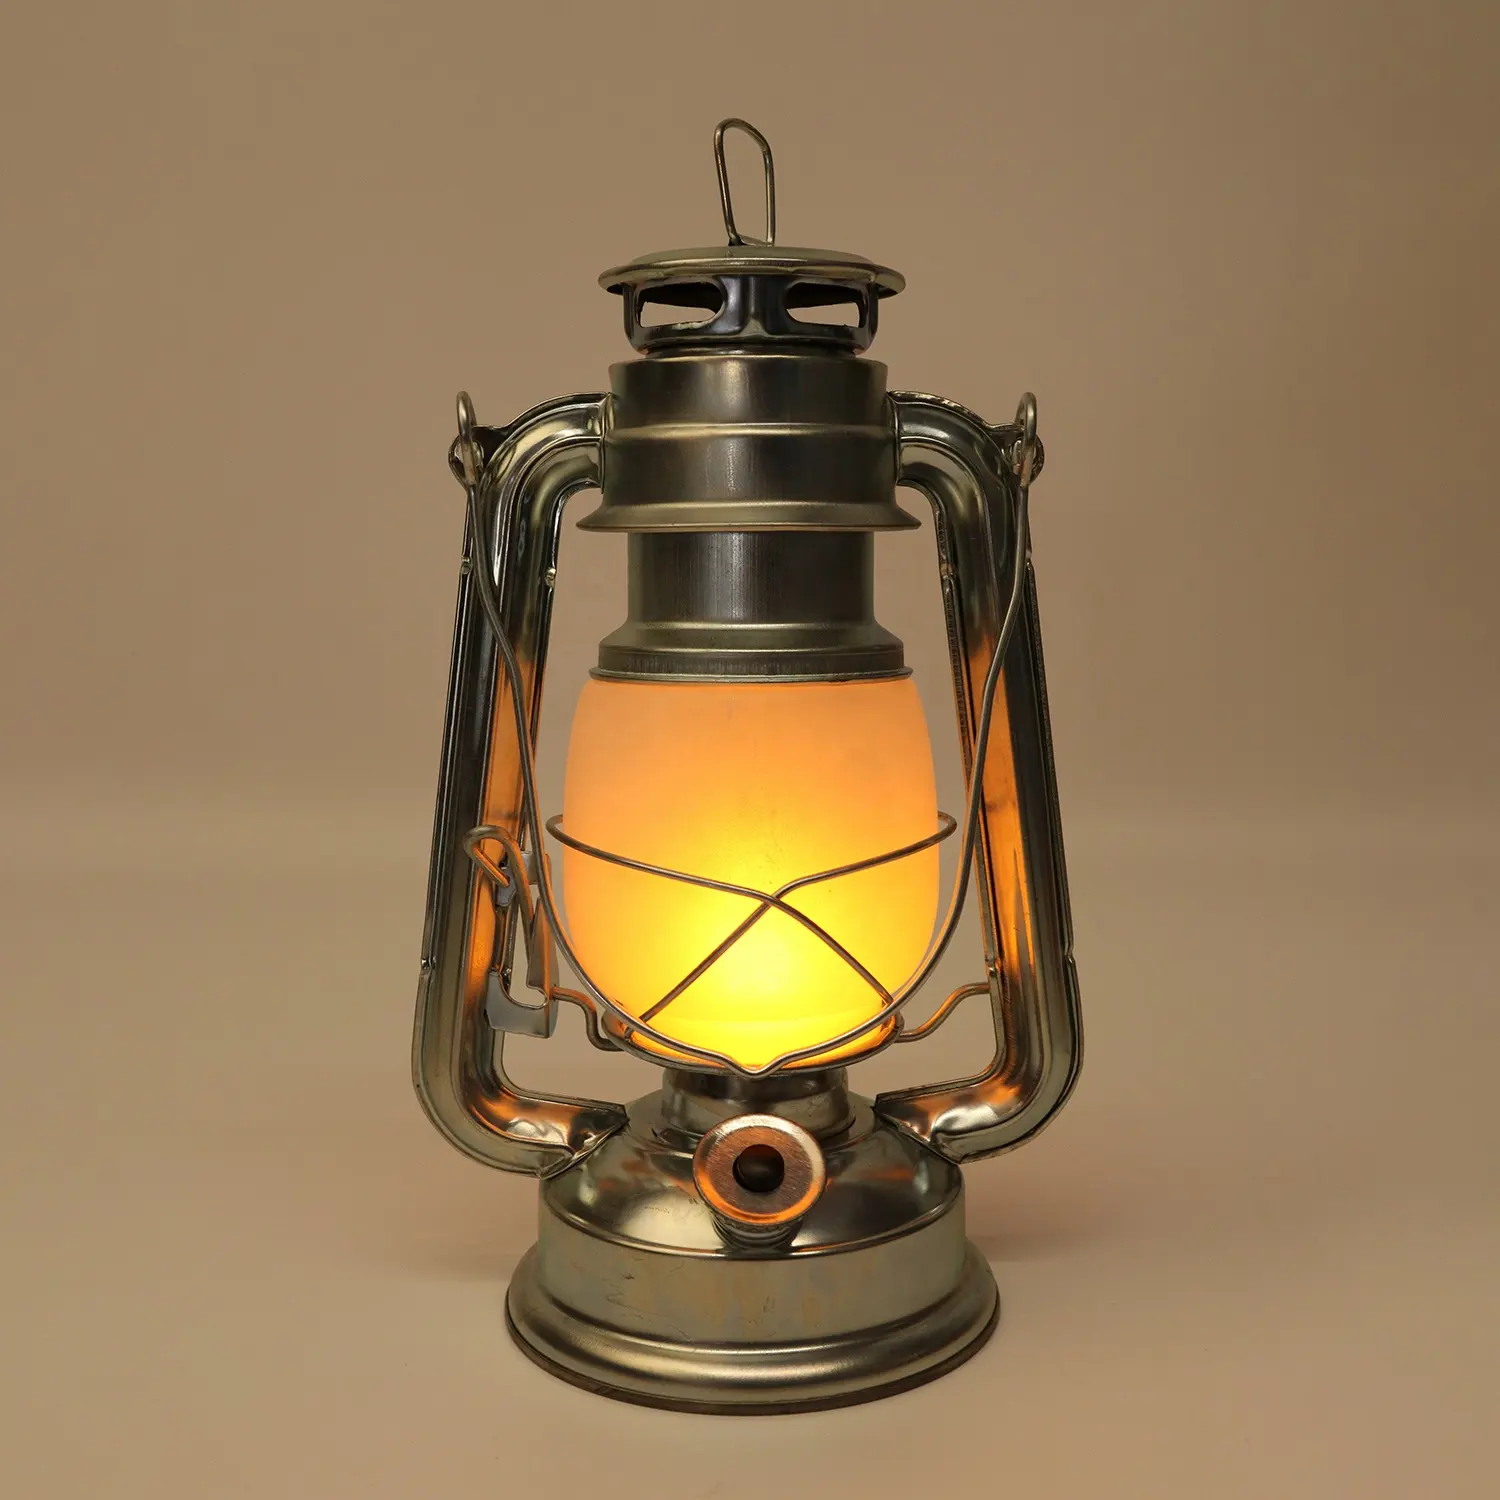 Vintage Kerosene Lamp Aluminum fireplace lantern Hanging LED Camping Light hurricane lantern